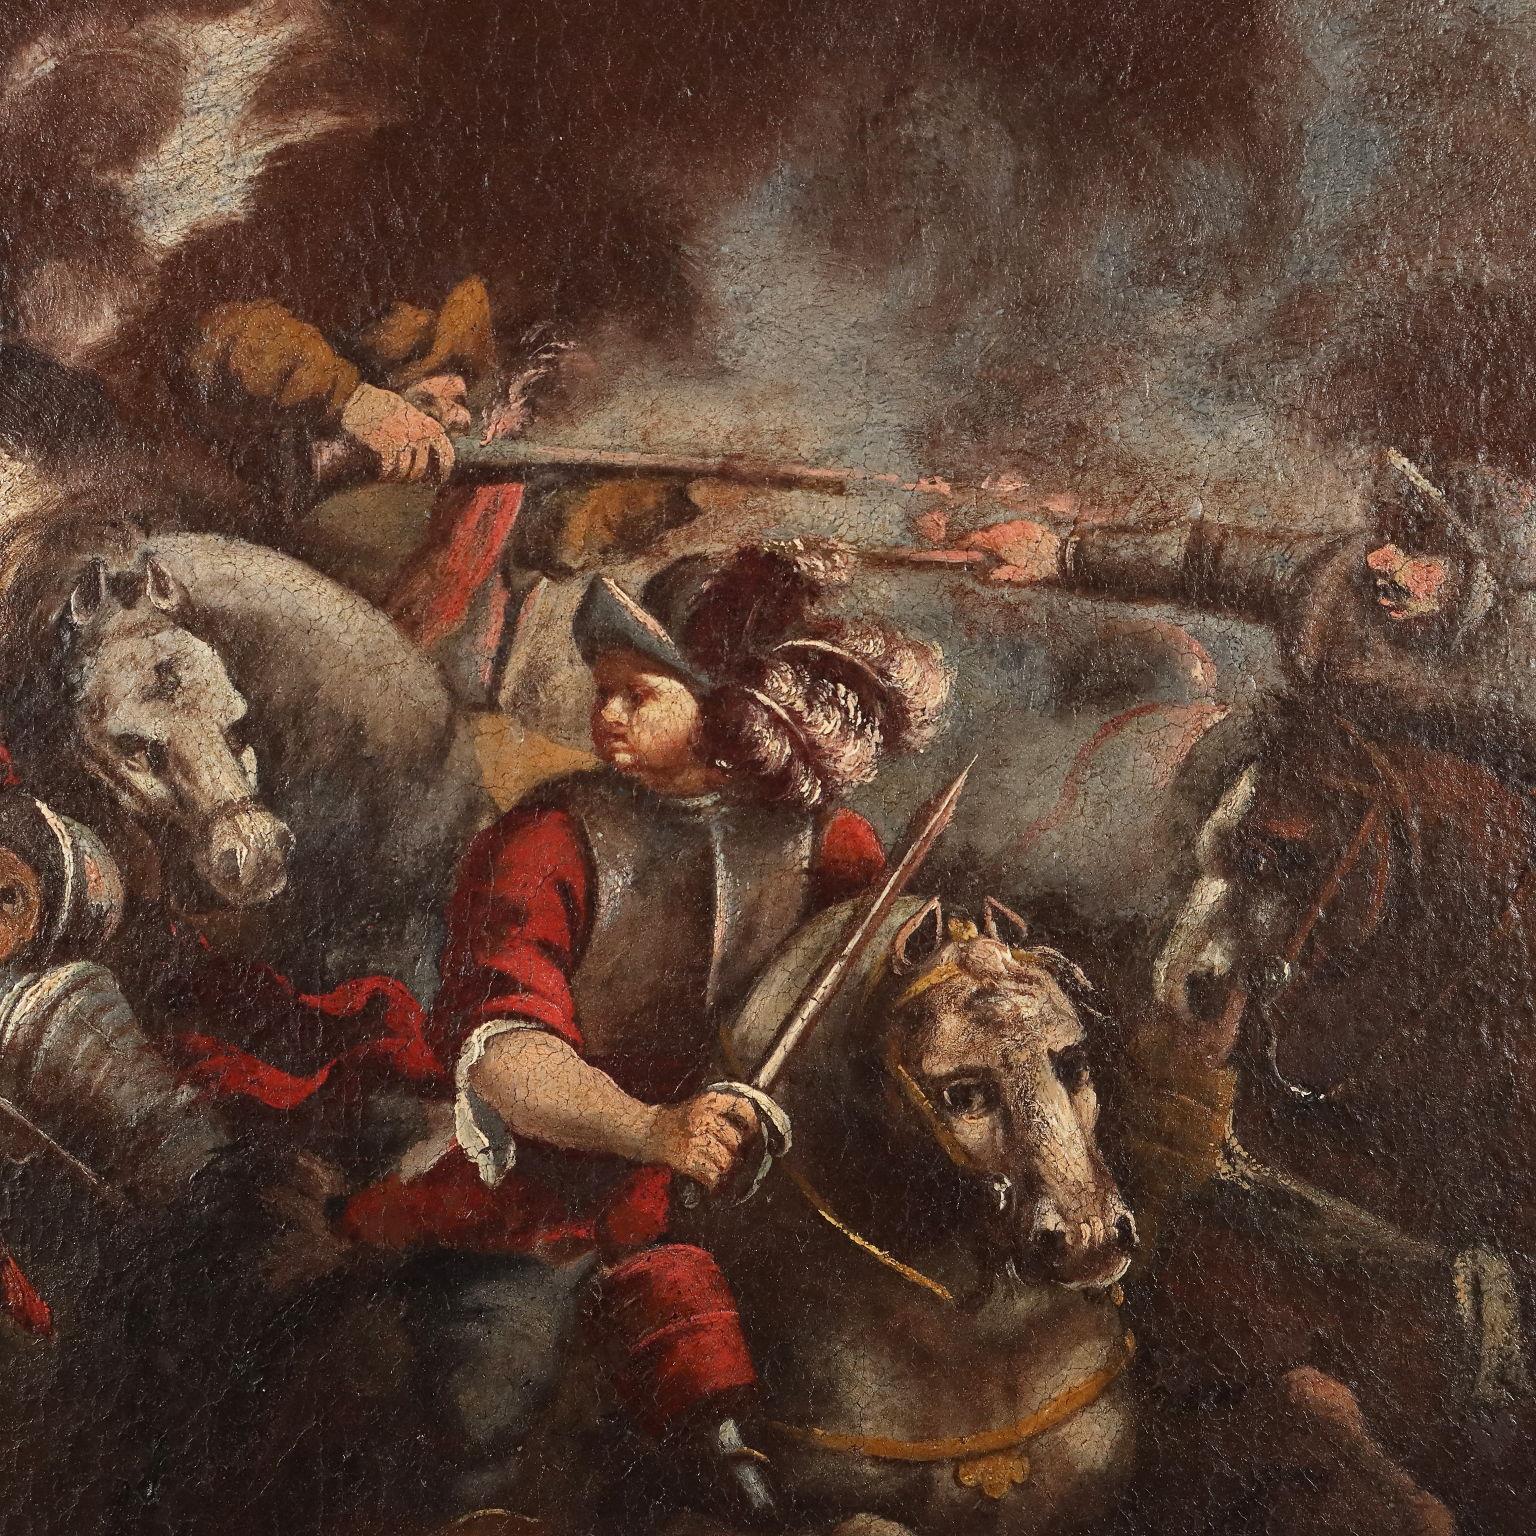 Öl auf Leinwand. 17. bis 18. Jahrhundert, norditalienische Schule. Die Szene zeigt das Aufeinandertreffen von Rittern vor den Mauern einer belagerten Stadt, während der Rauch von Feuerwaffen in den Himmel steigt. Das Gemälde wurde restauriert und